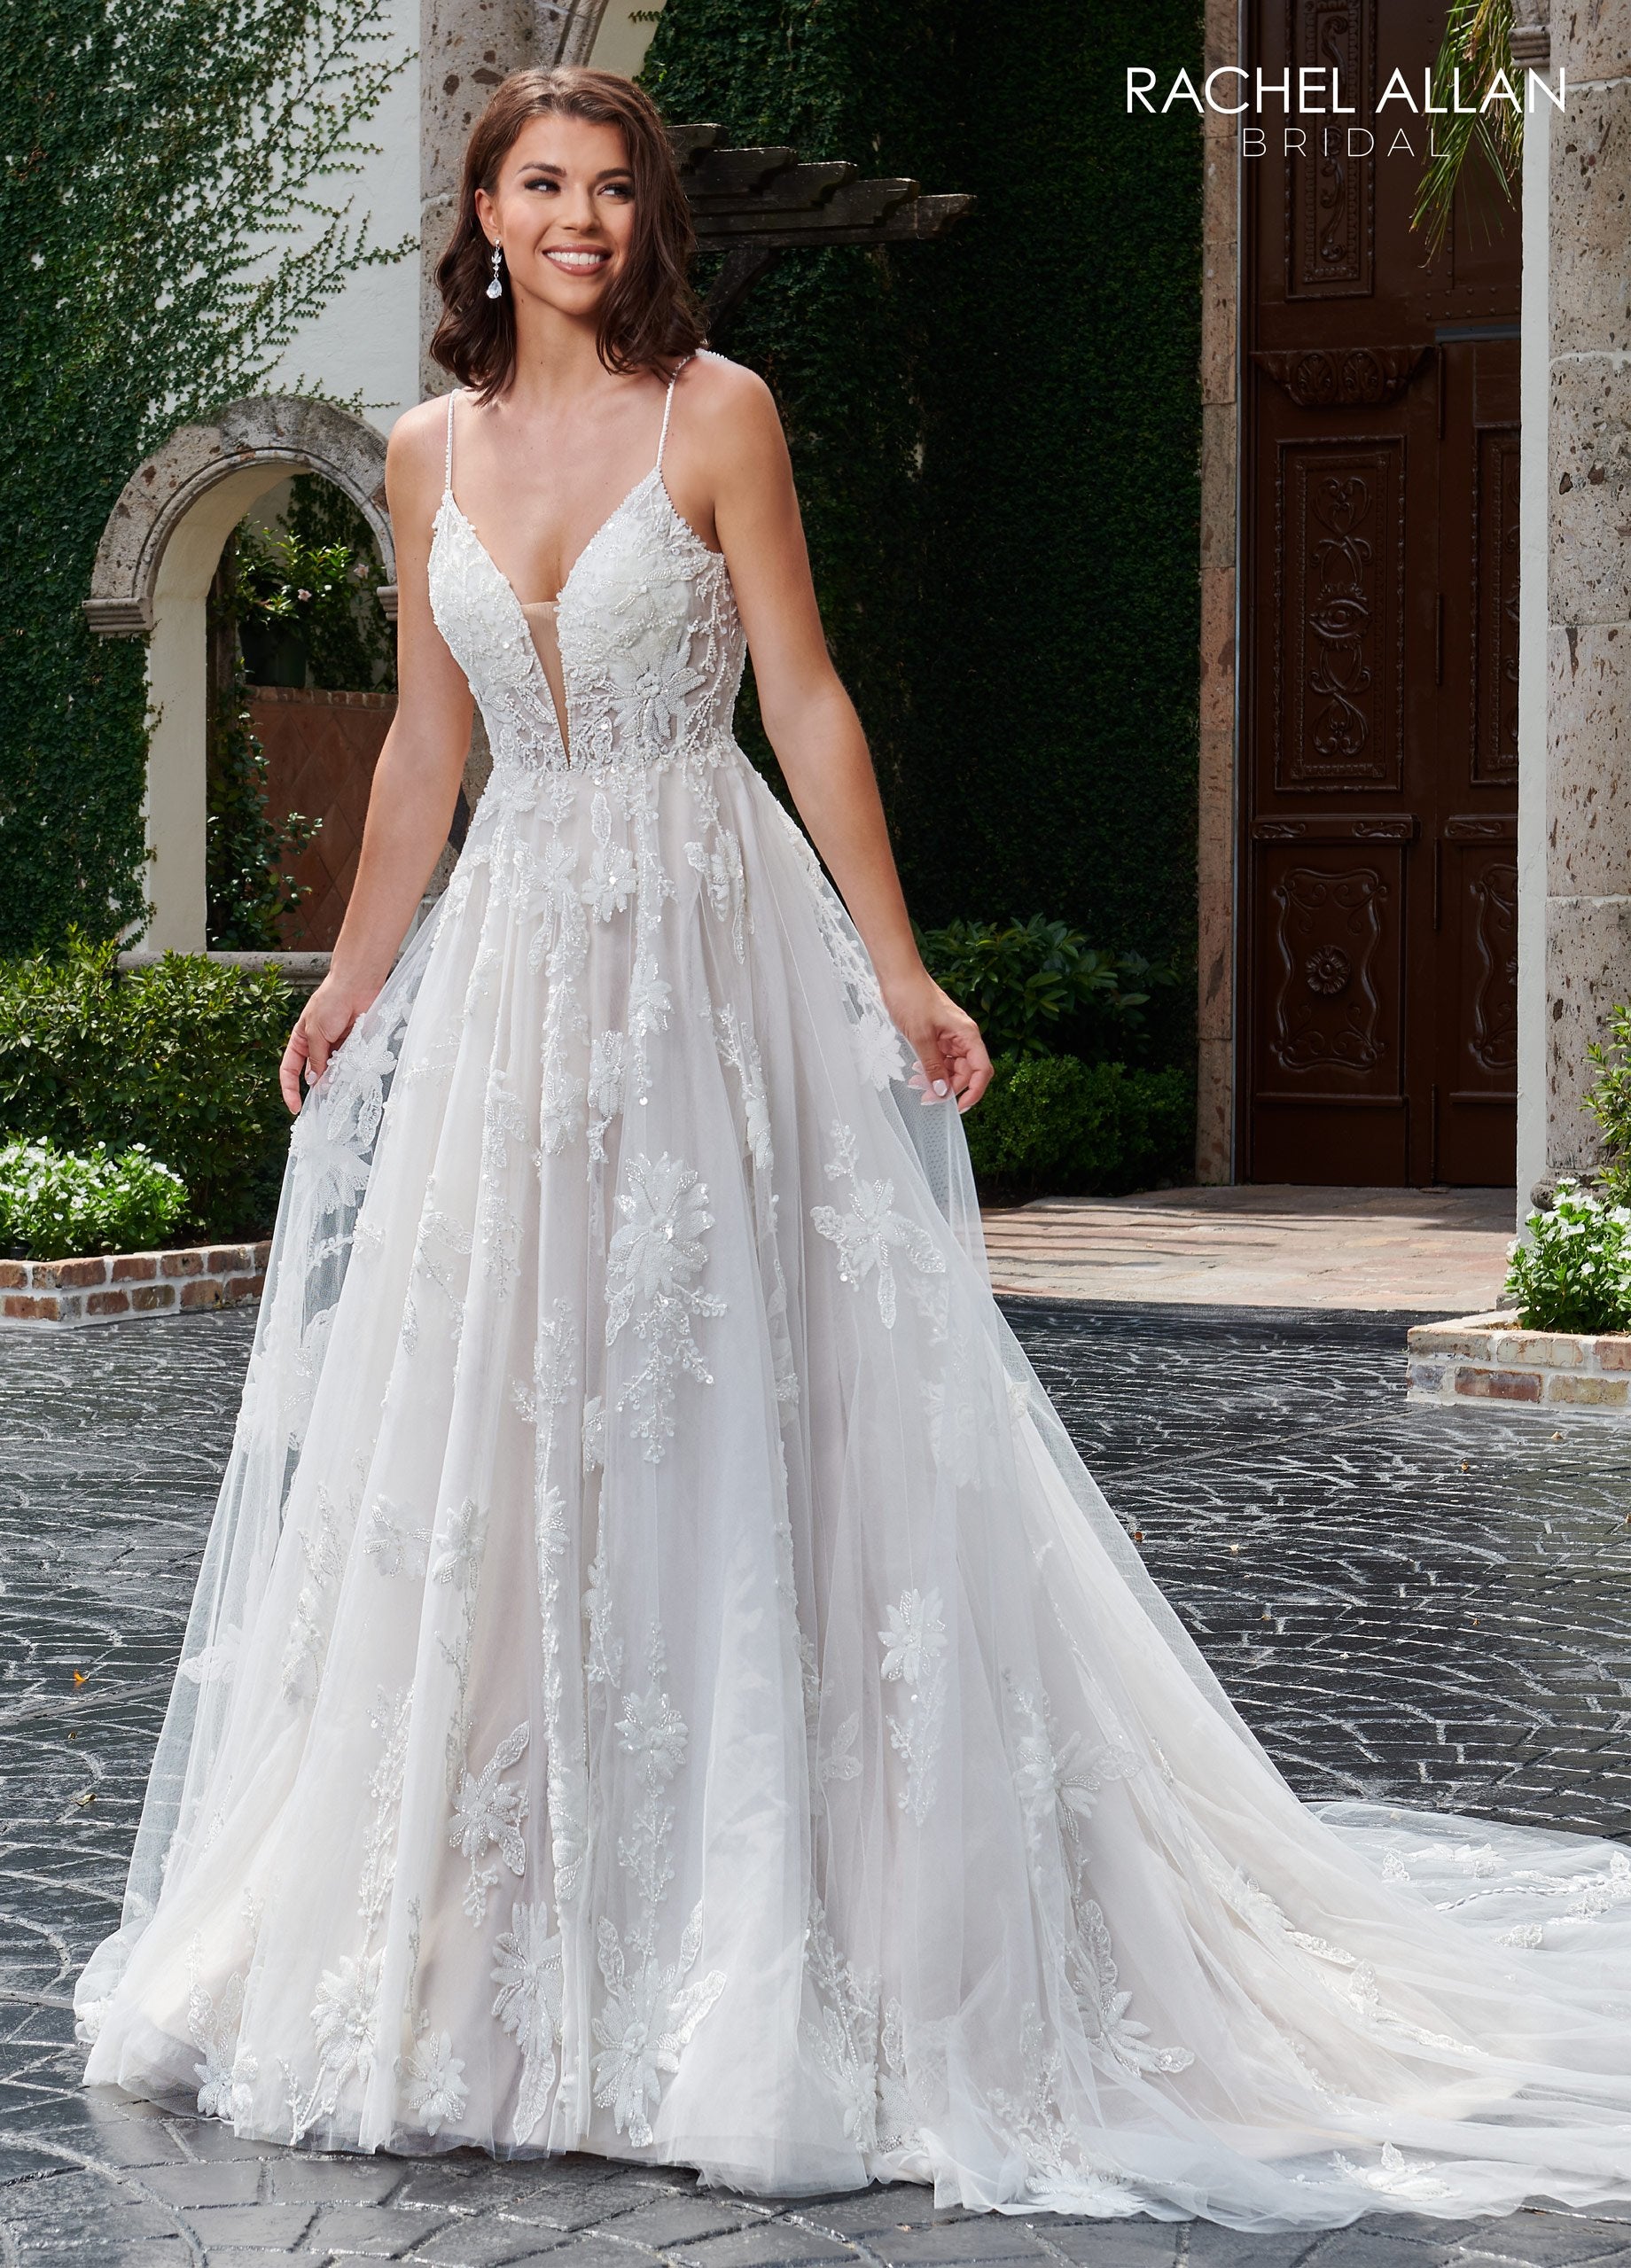 Novias Bridal  Heart A-line Lo' Adoro Bridal In Ivory Color Wedding Dress